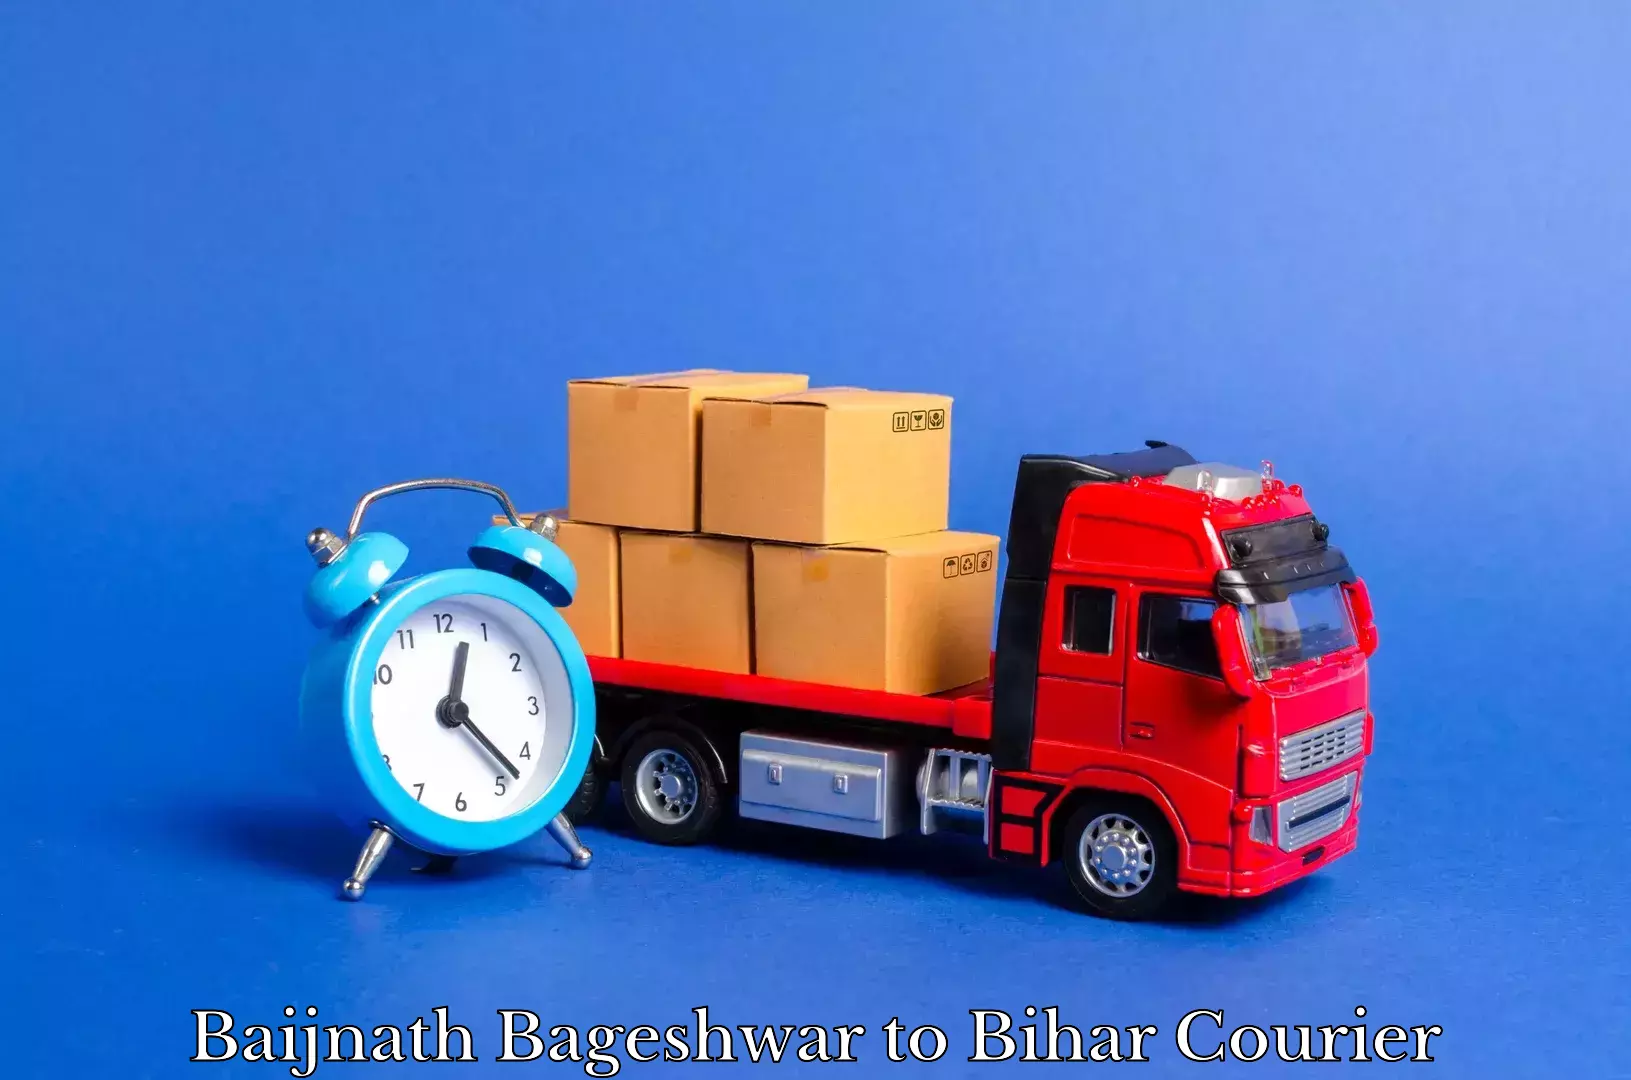 Trusted relocation experts Baijnath Bageshwar to Goh Aurangabad